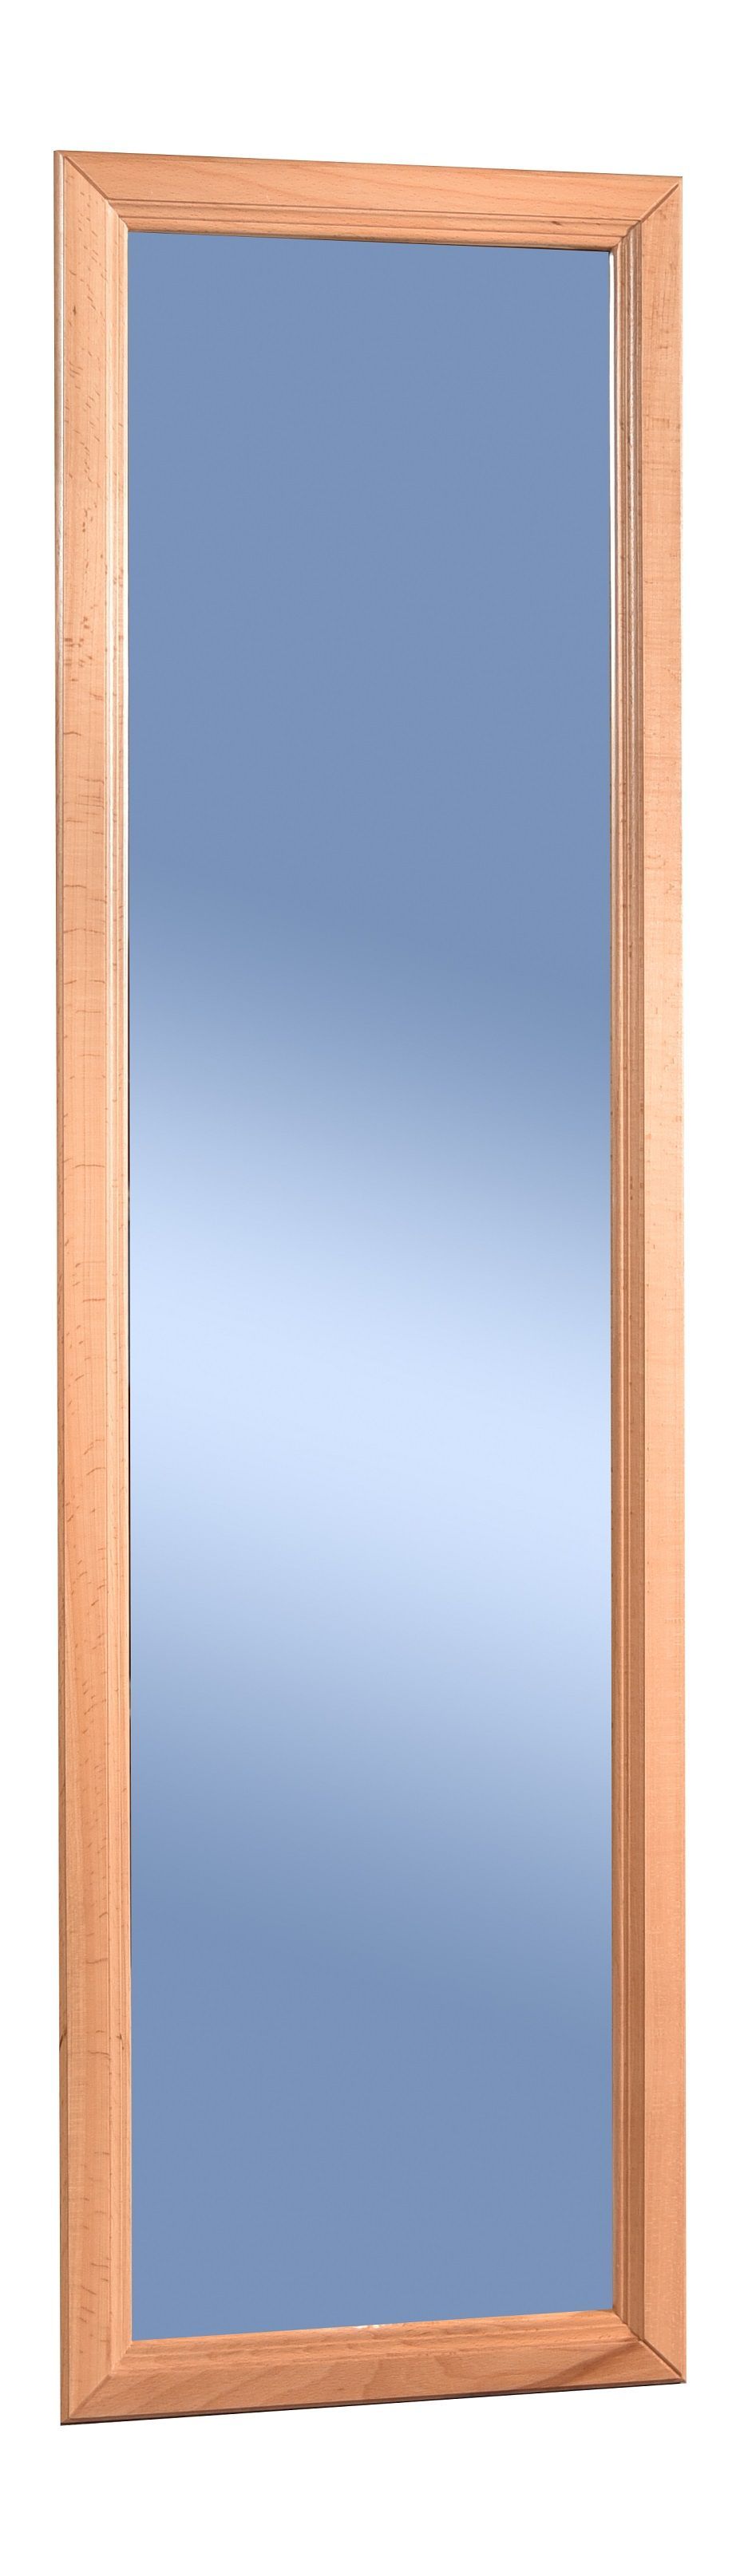 Зеркало настенное "Селена" фото 1